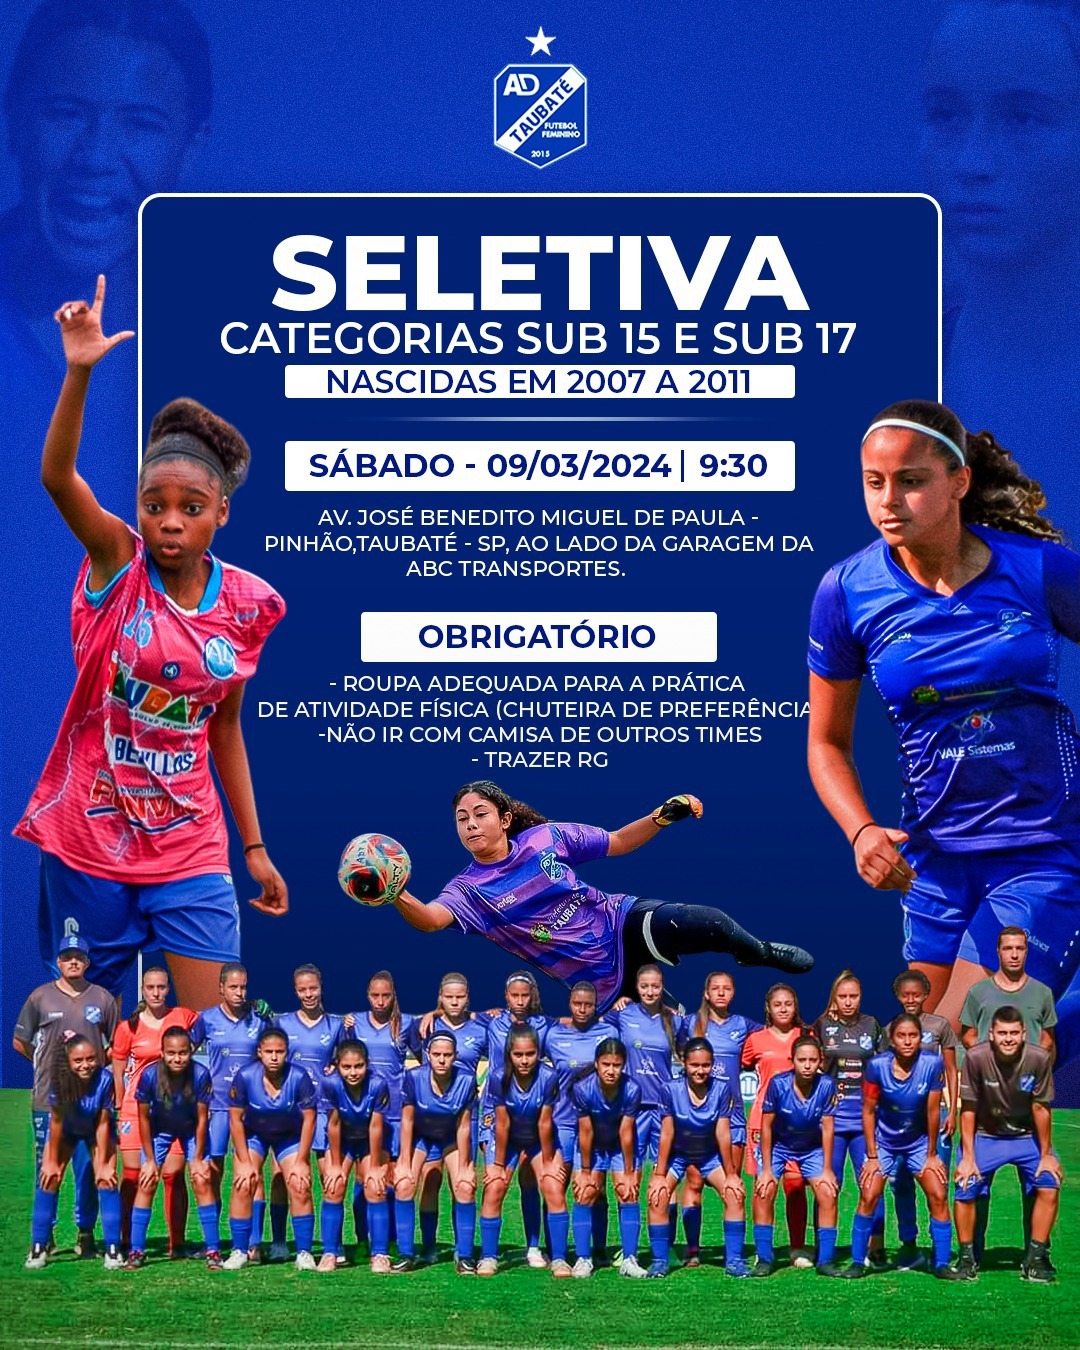 AD Taubaté promove seletiva para categorias Sub15 e Sub17